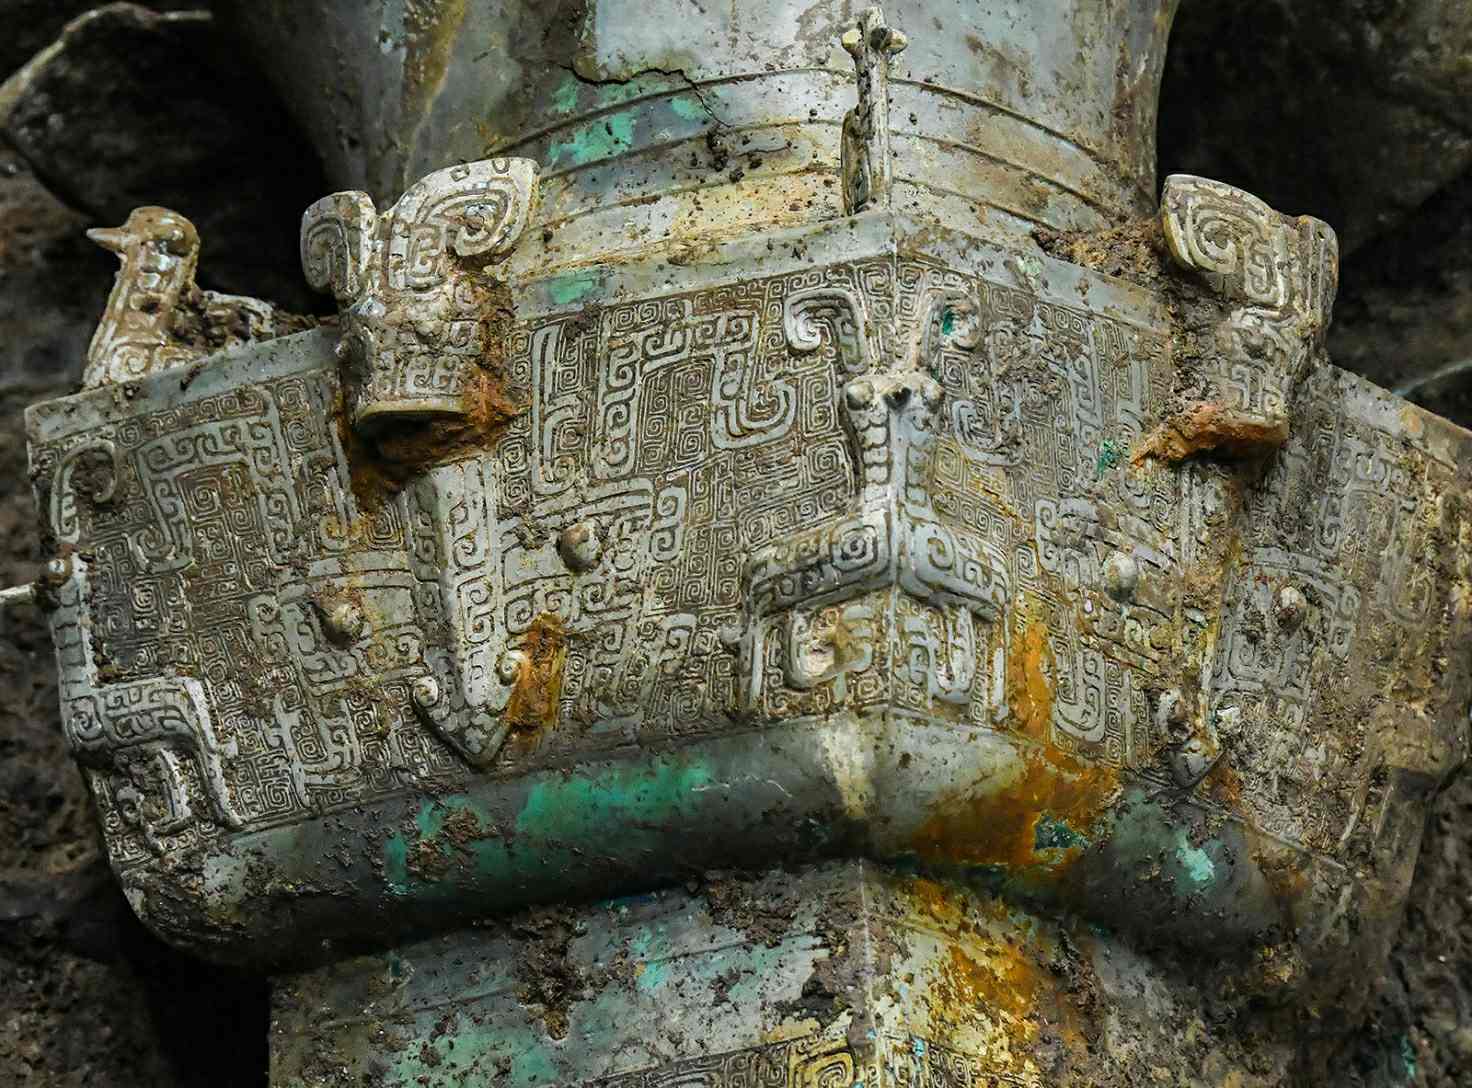 یادگارهای فرهنگی در گودال شماره 3 قربانی سایت Sanxingdui Ruins در Deyang ، استان سیچوان ، چین ، 20 مارس 2021 کشف شد.